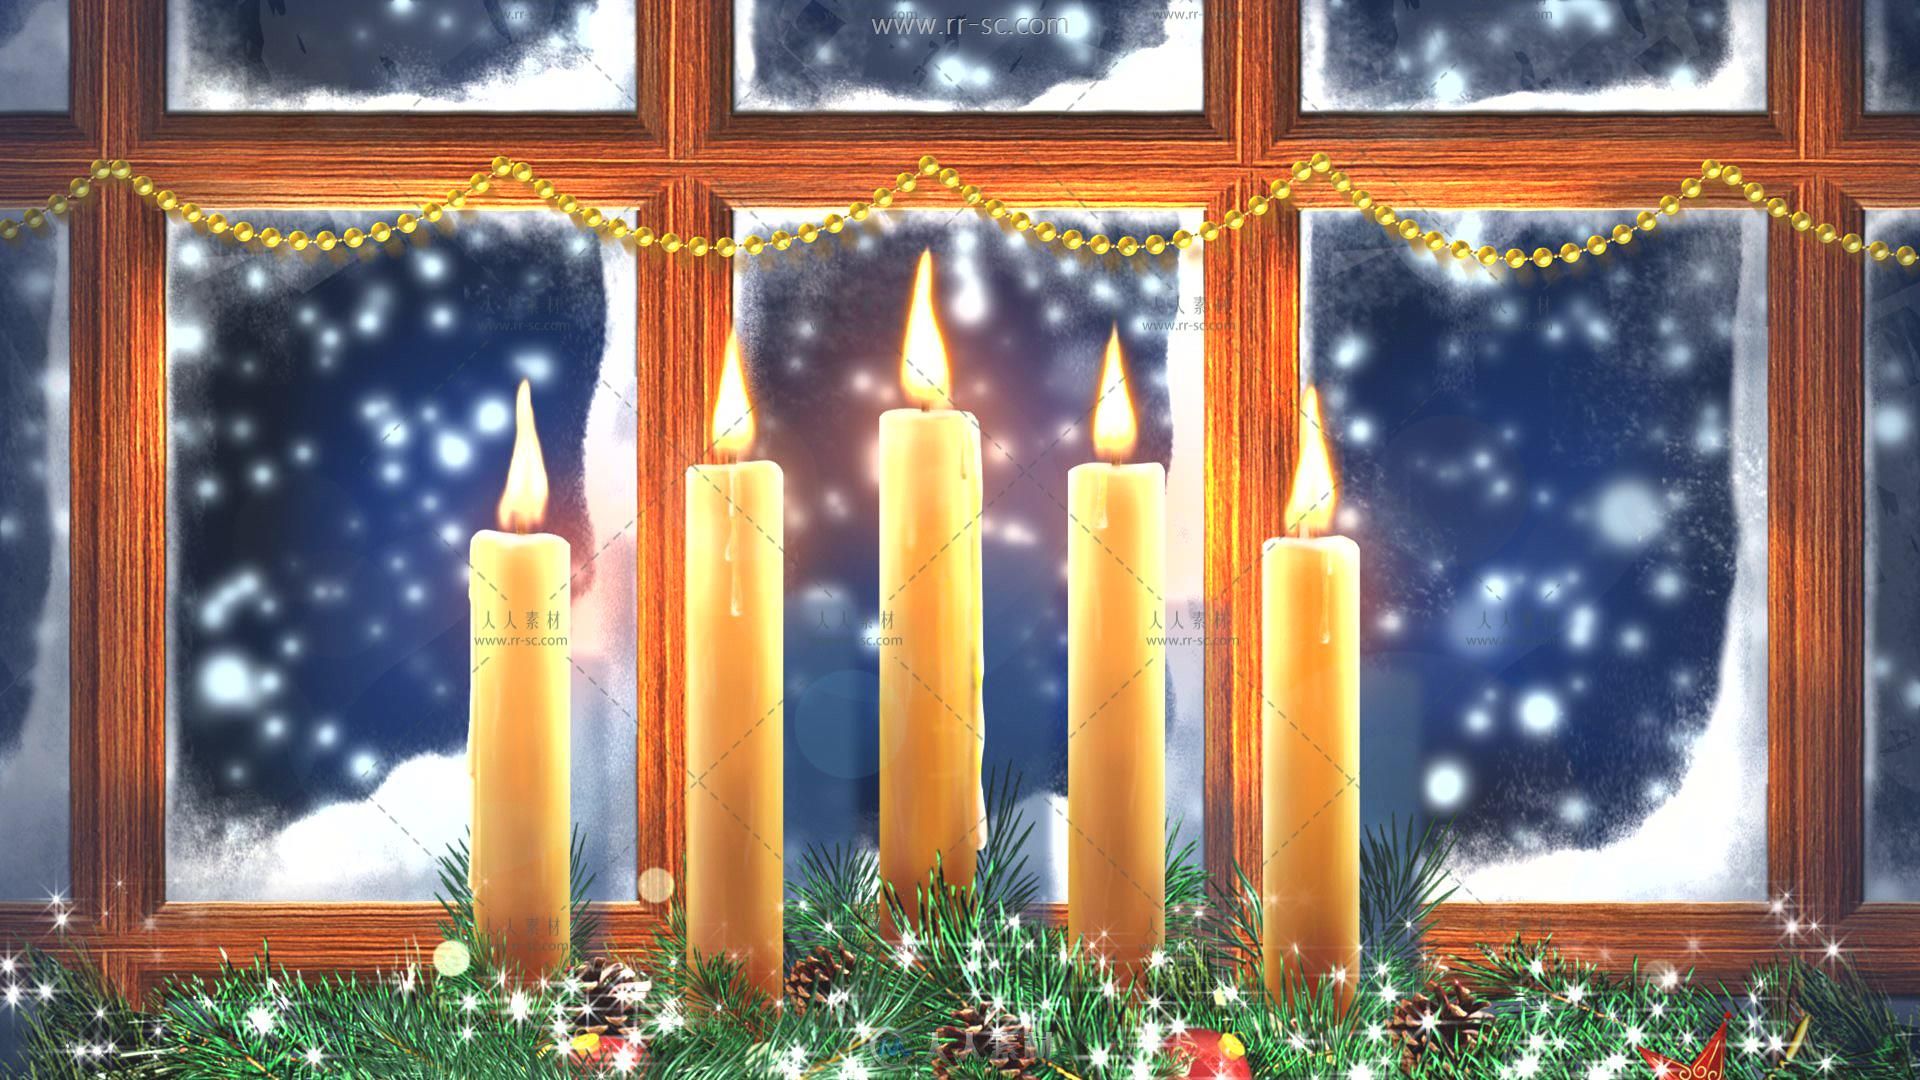 2组圣诞夜蜡烛在窗前燃烧唯美浪漫视频素材